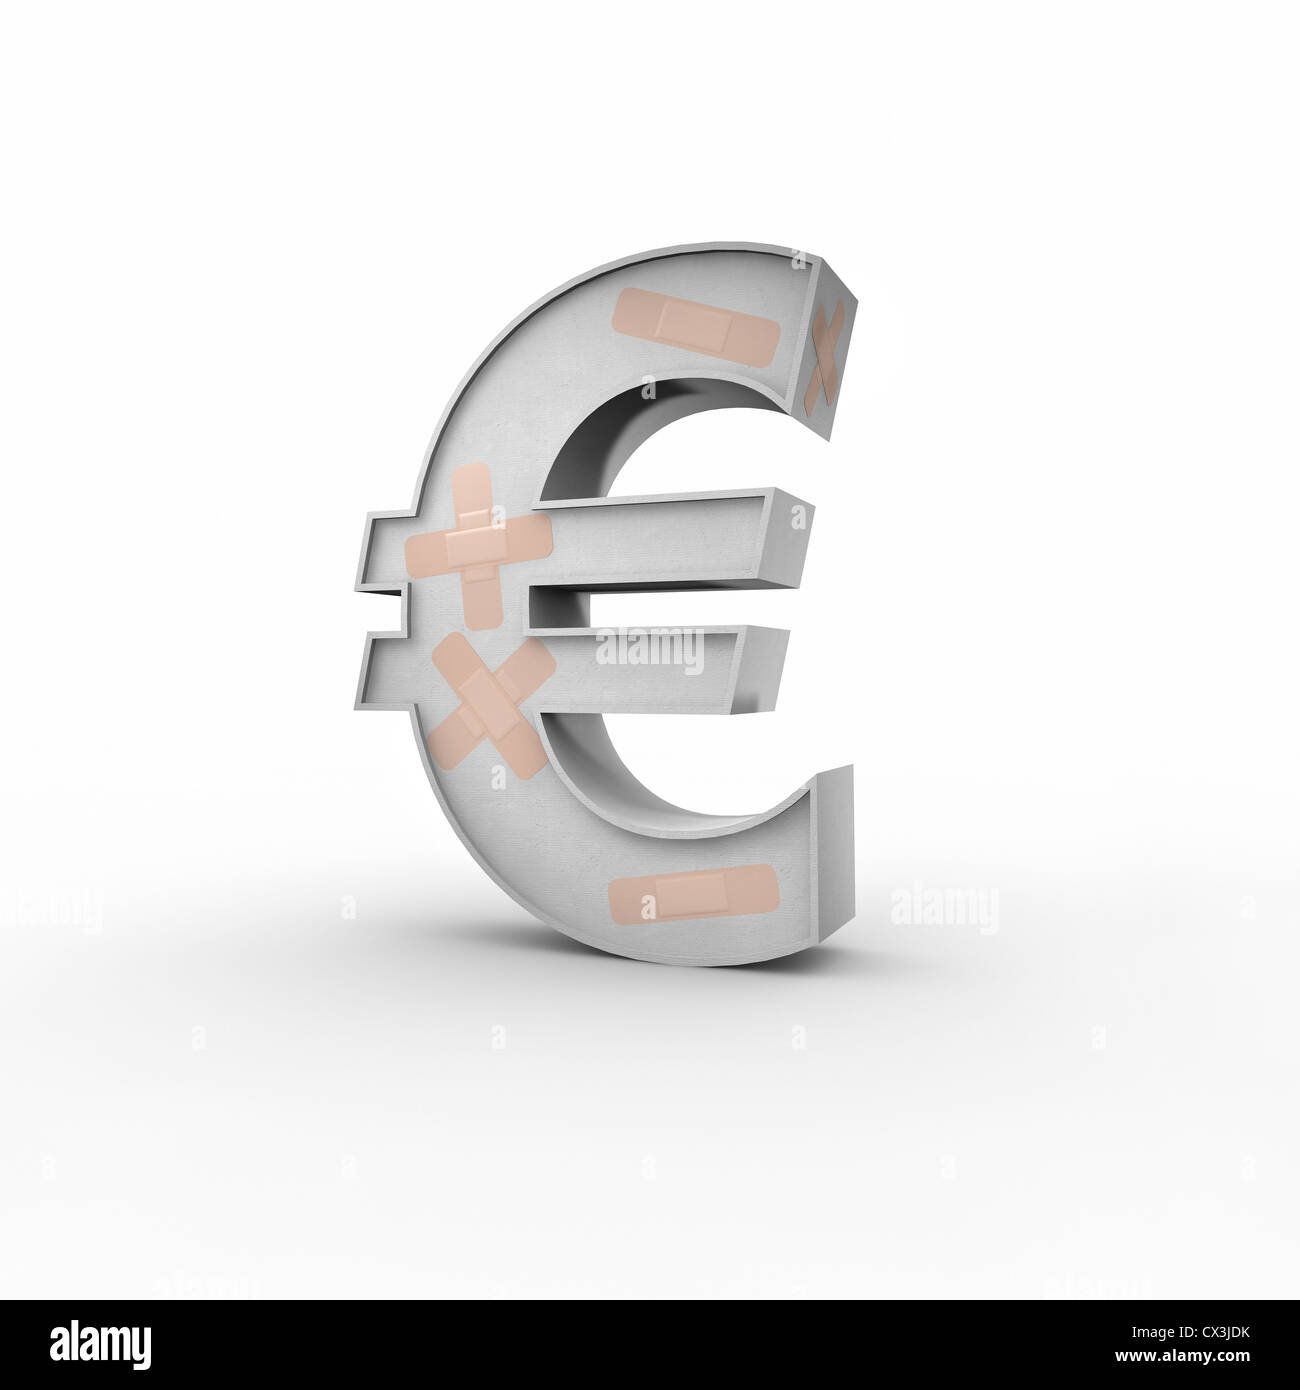 Eurozeichen Mit Pflastern Auf der Oberfläche Auf Weissem Hintergrund-Eurozeichen mit Bandagen Stockfoto